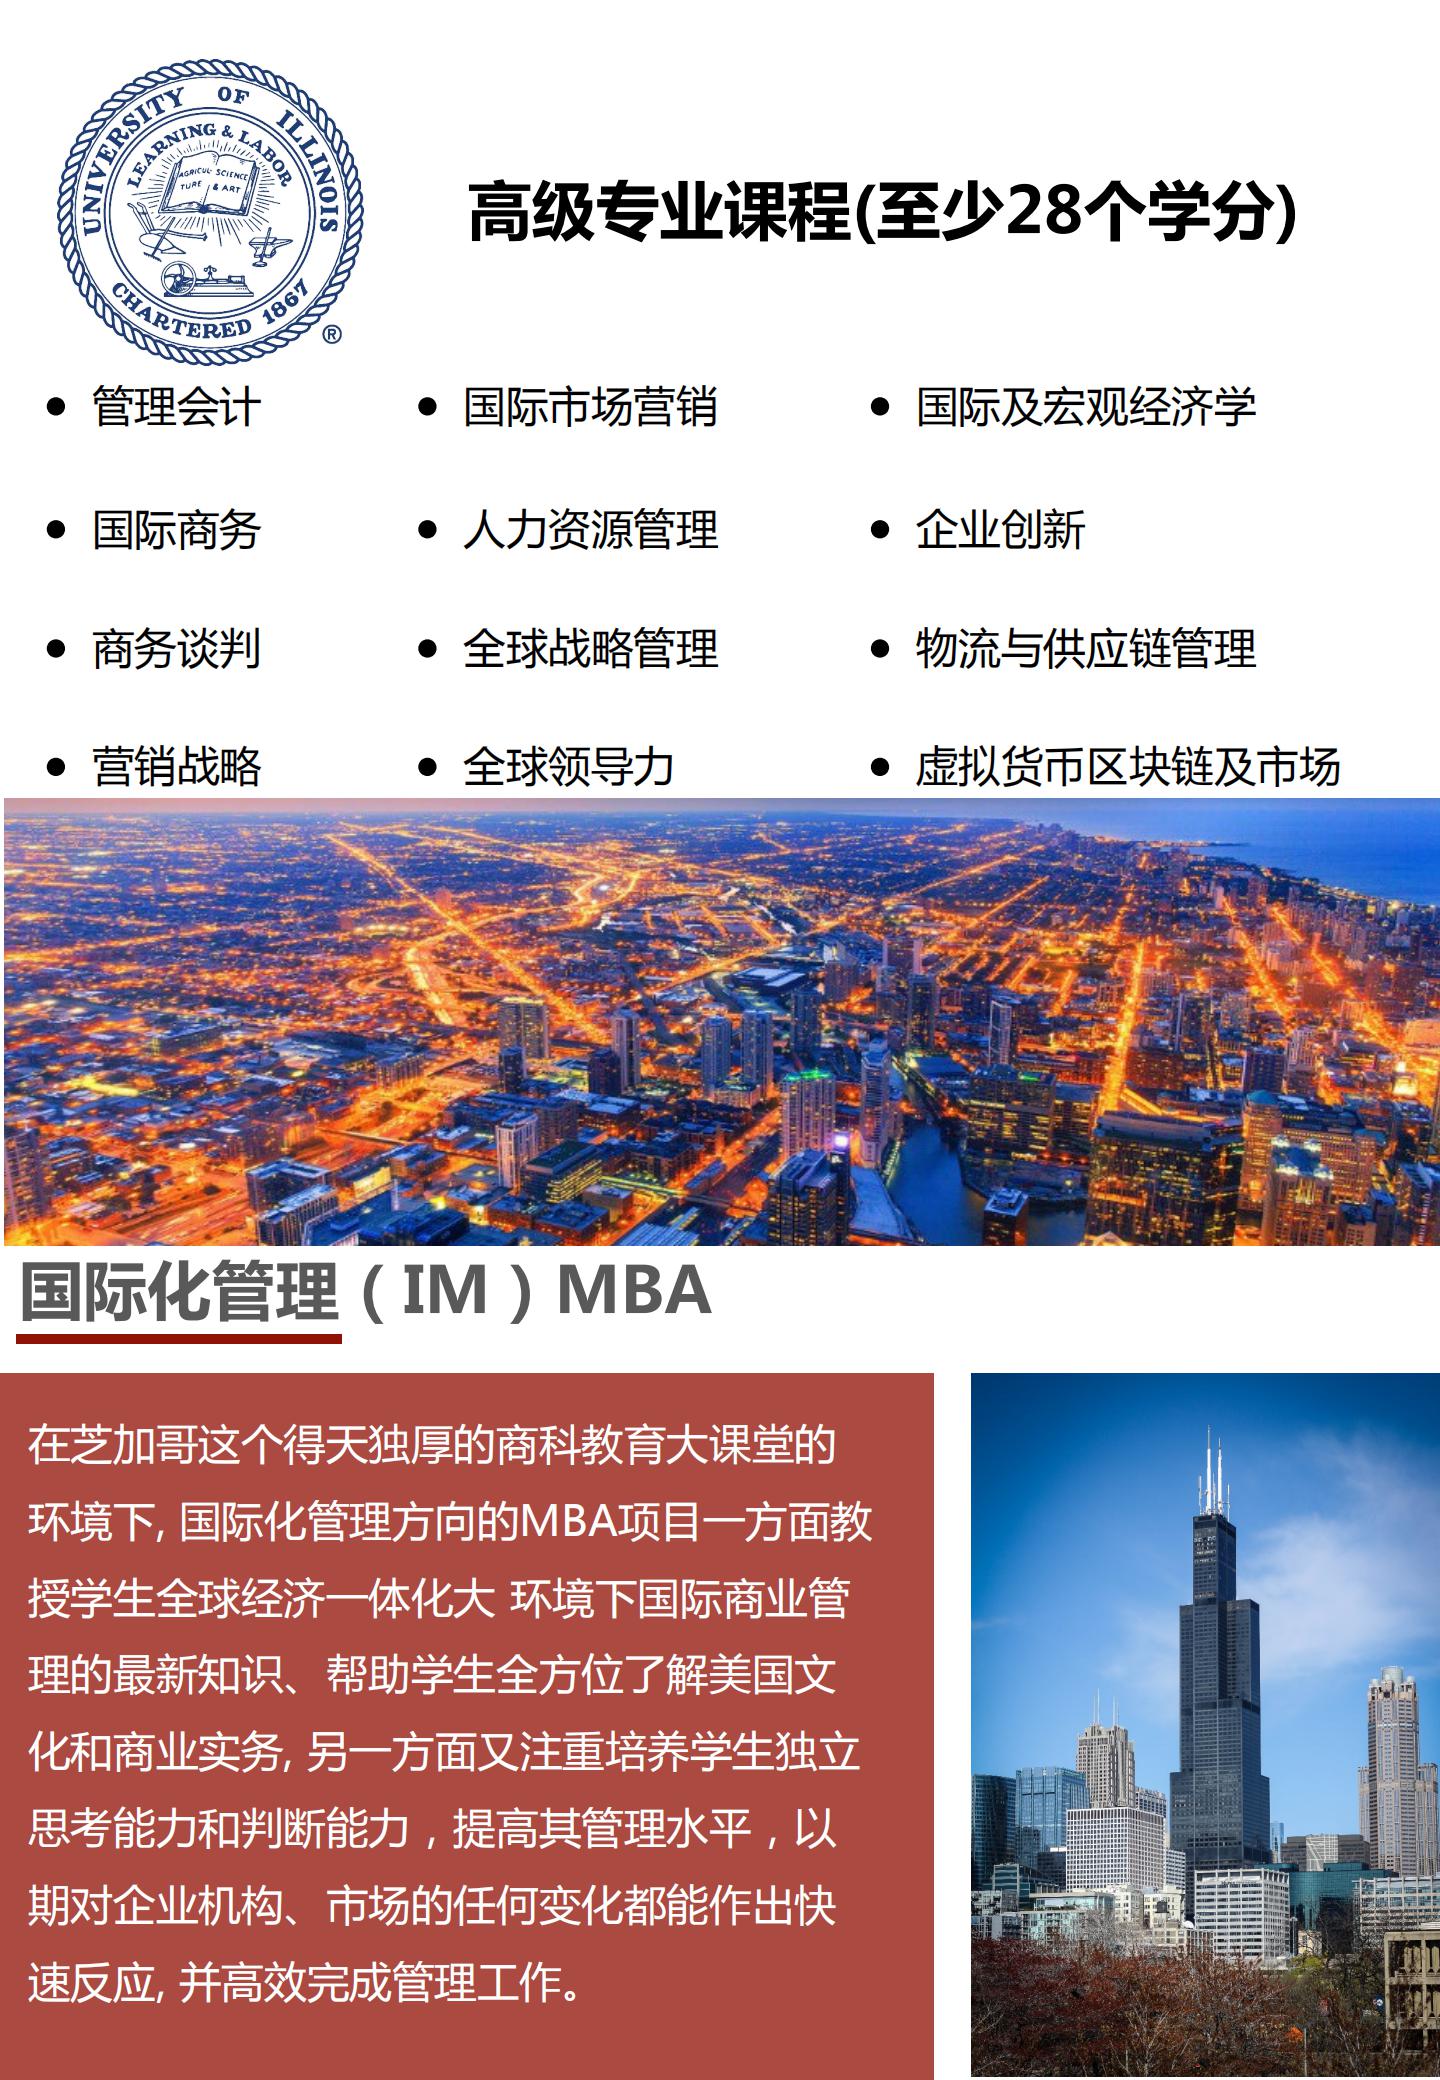 伊利诺伊芝加哥分校MBA简章(2)(1)_07.jpg